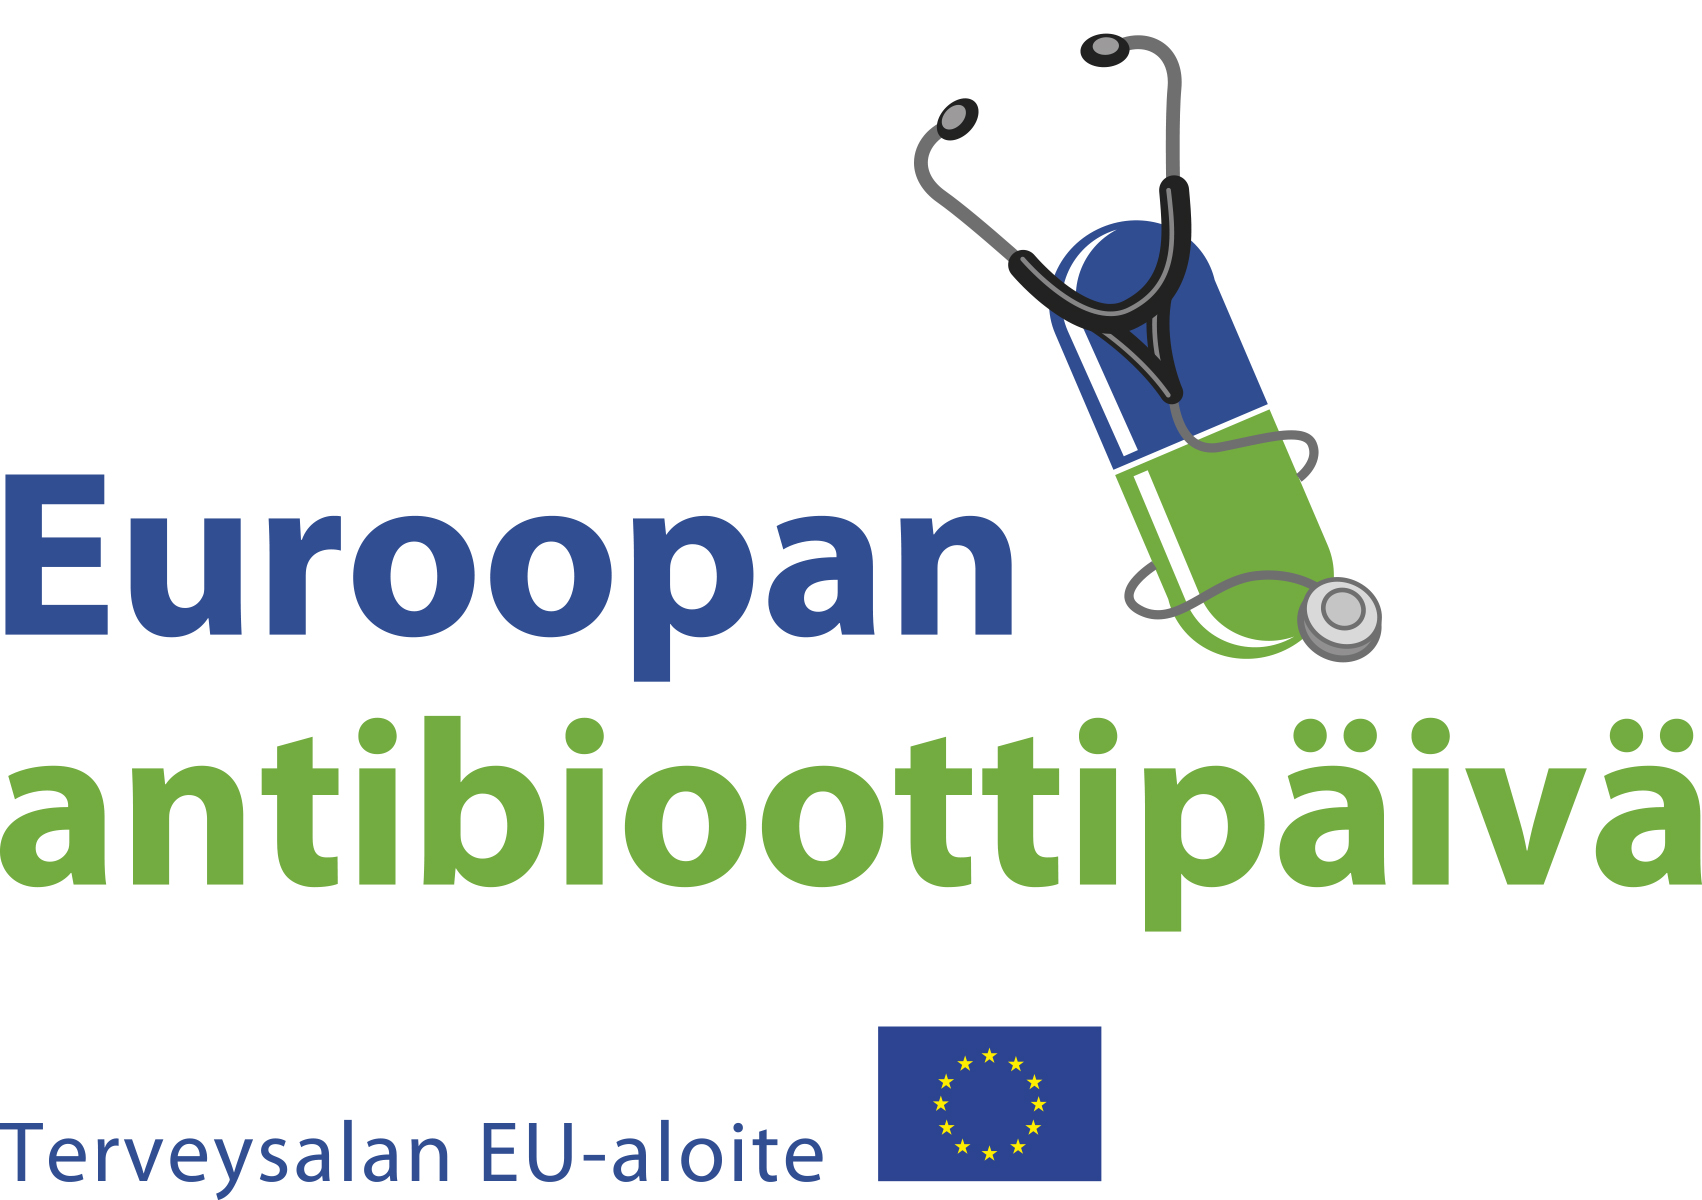 Euroopan antibioottipäivän tunnus. Kuvassa stetoskooppi ja lääkekapseli.